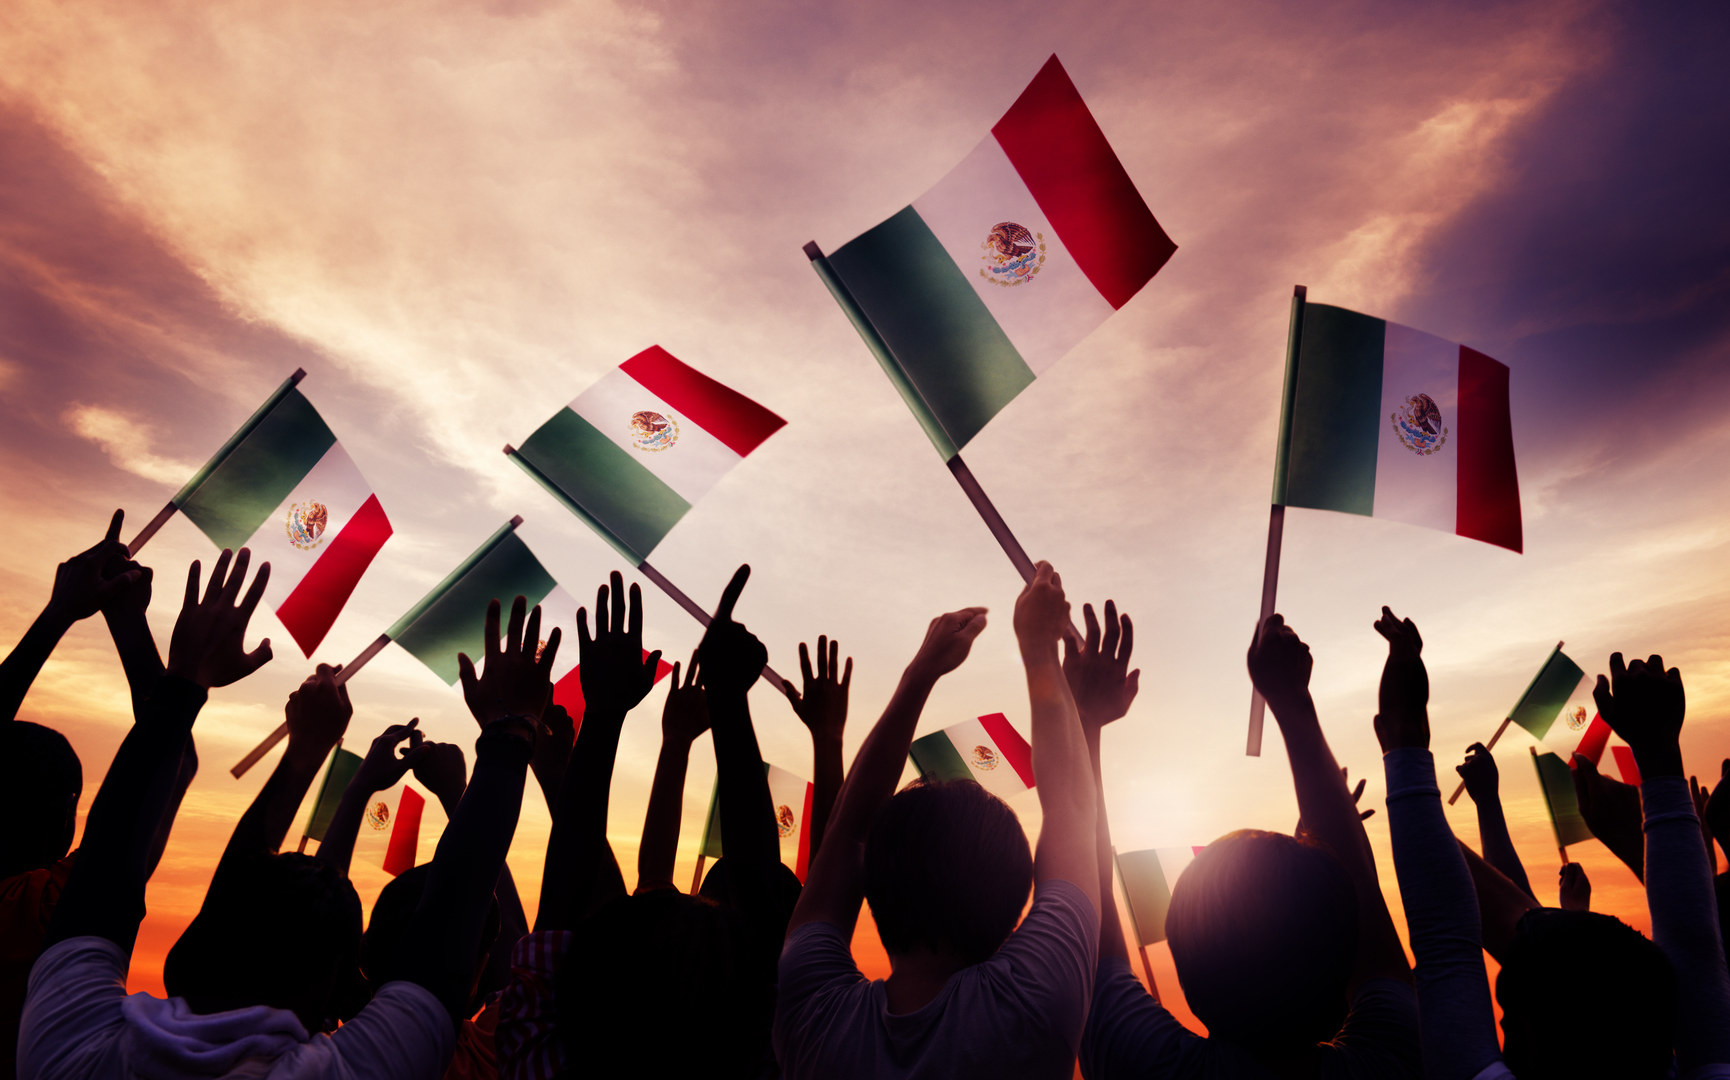  viva mexico le cri de l independance mexique